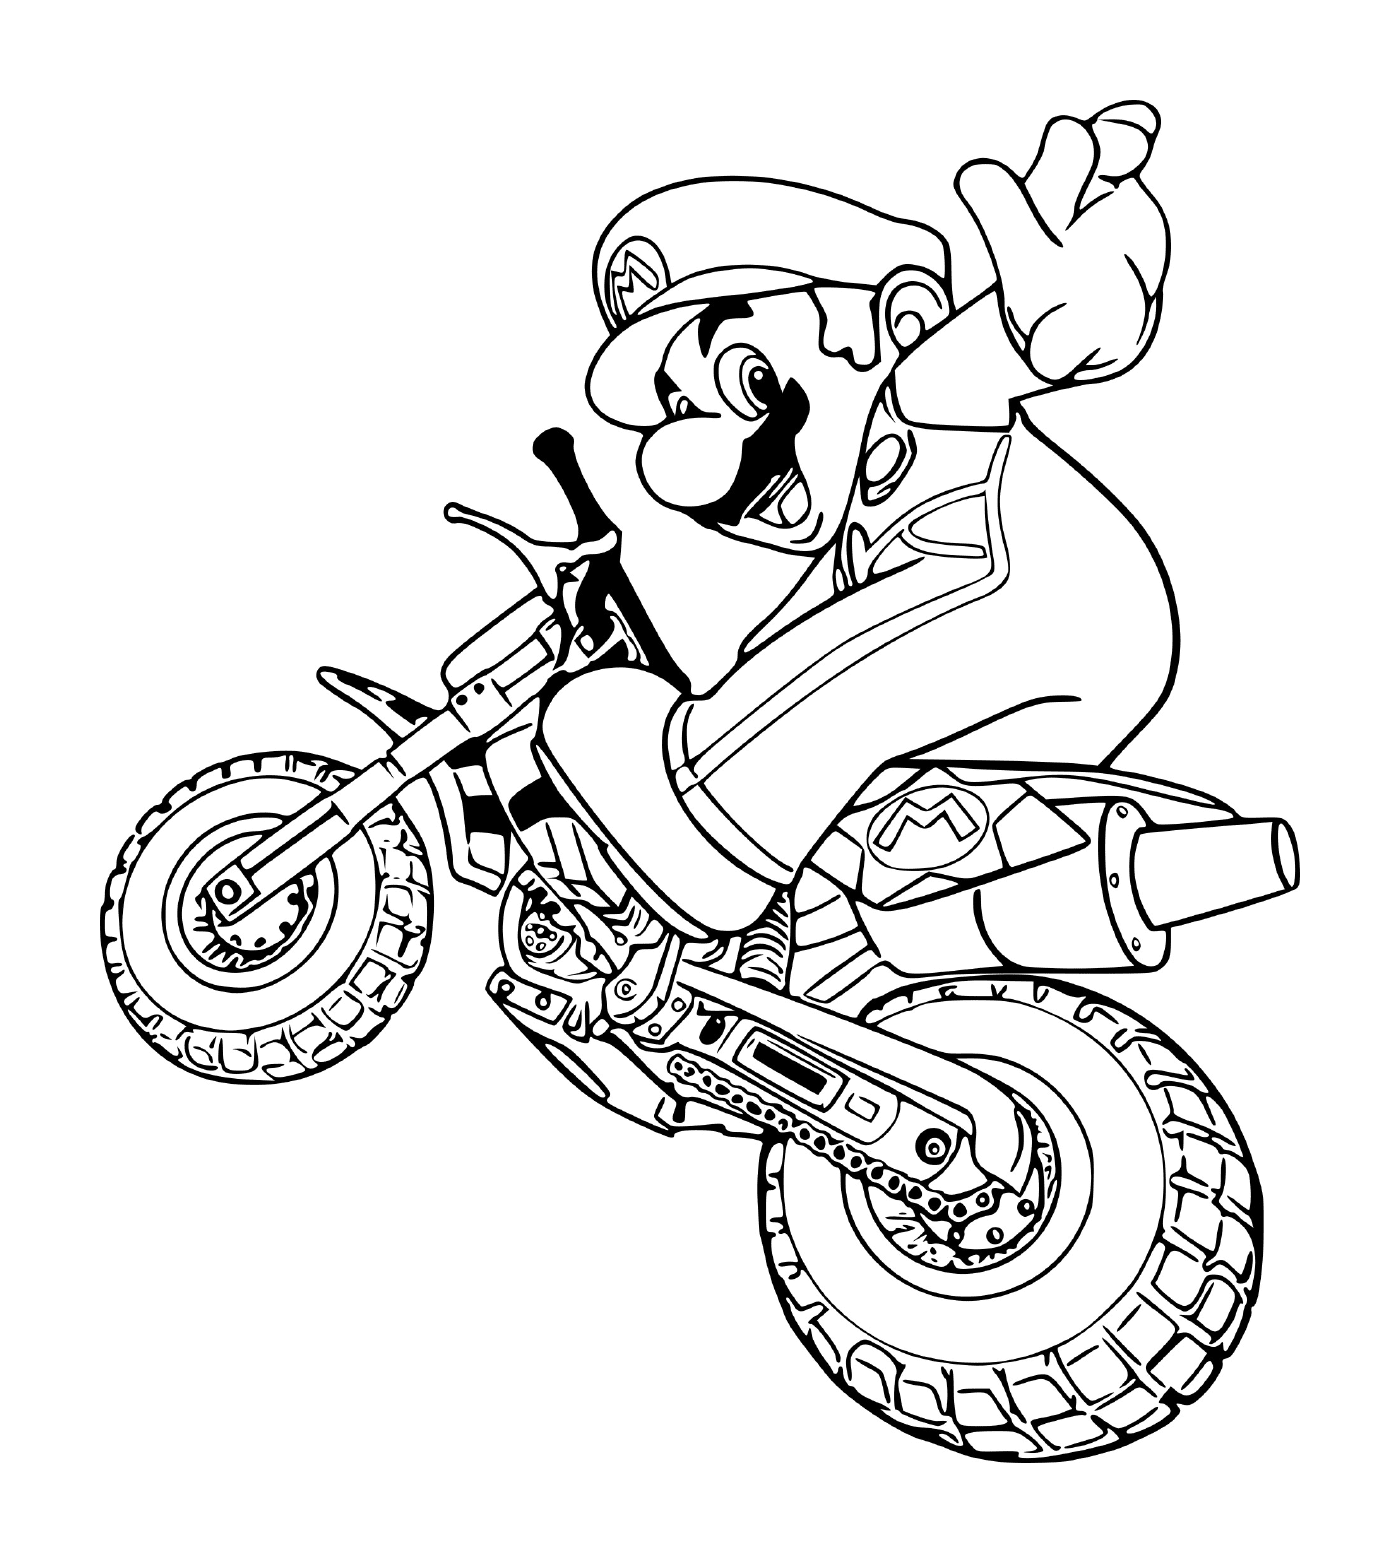  Mario en una motocicleta 